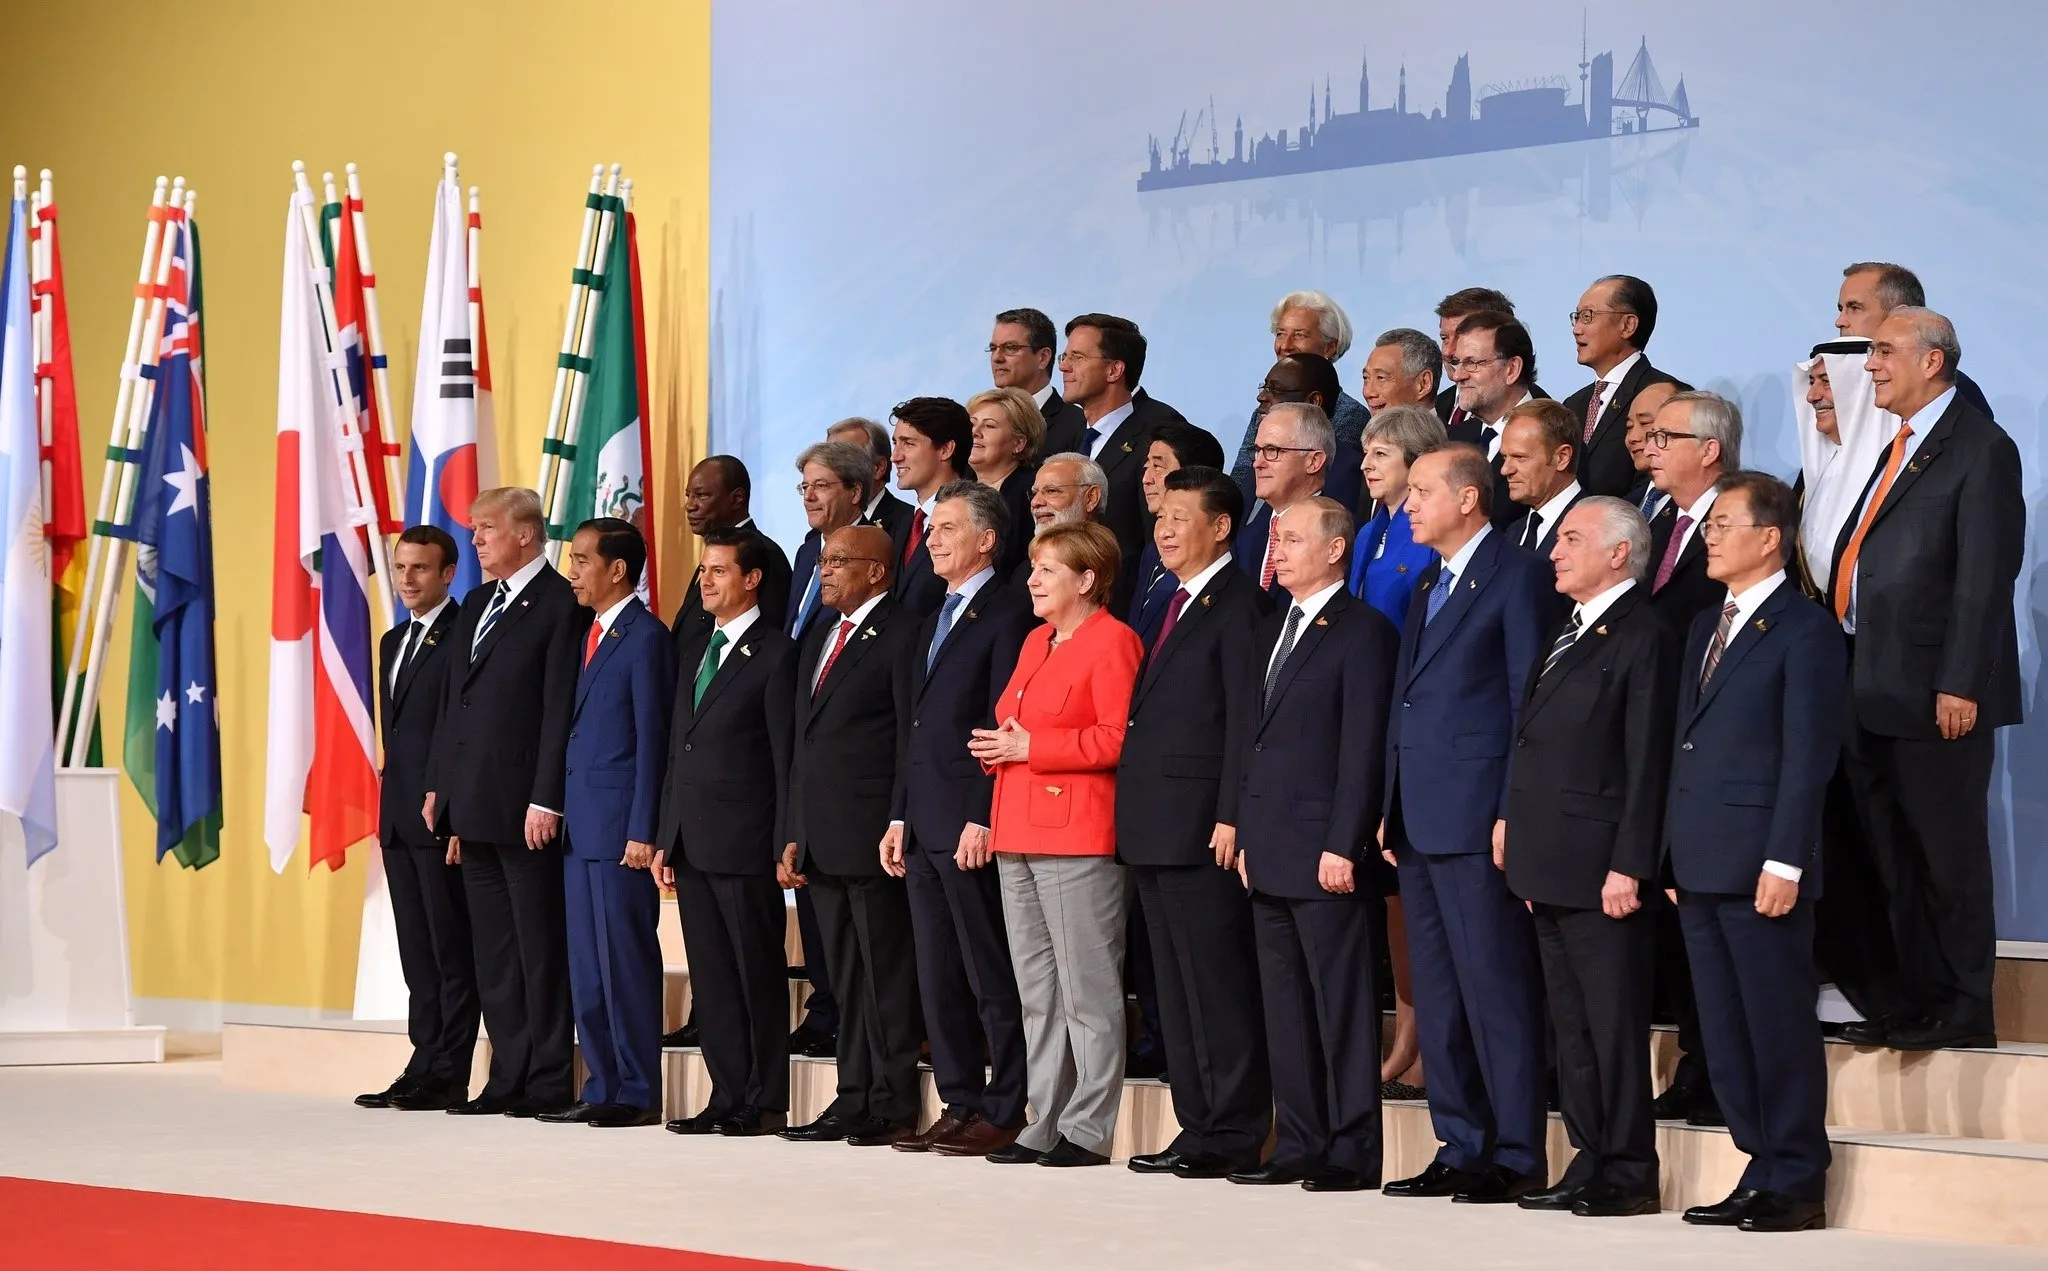 Представители рф в международных организациях. Группа 20 саммит. Большой двадцатки g20. G20 Summit. Большая двадцатка g20 состав.